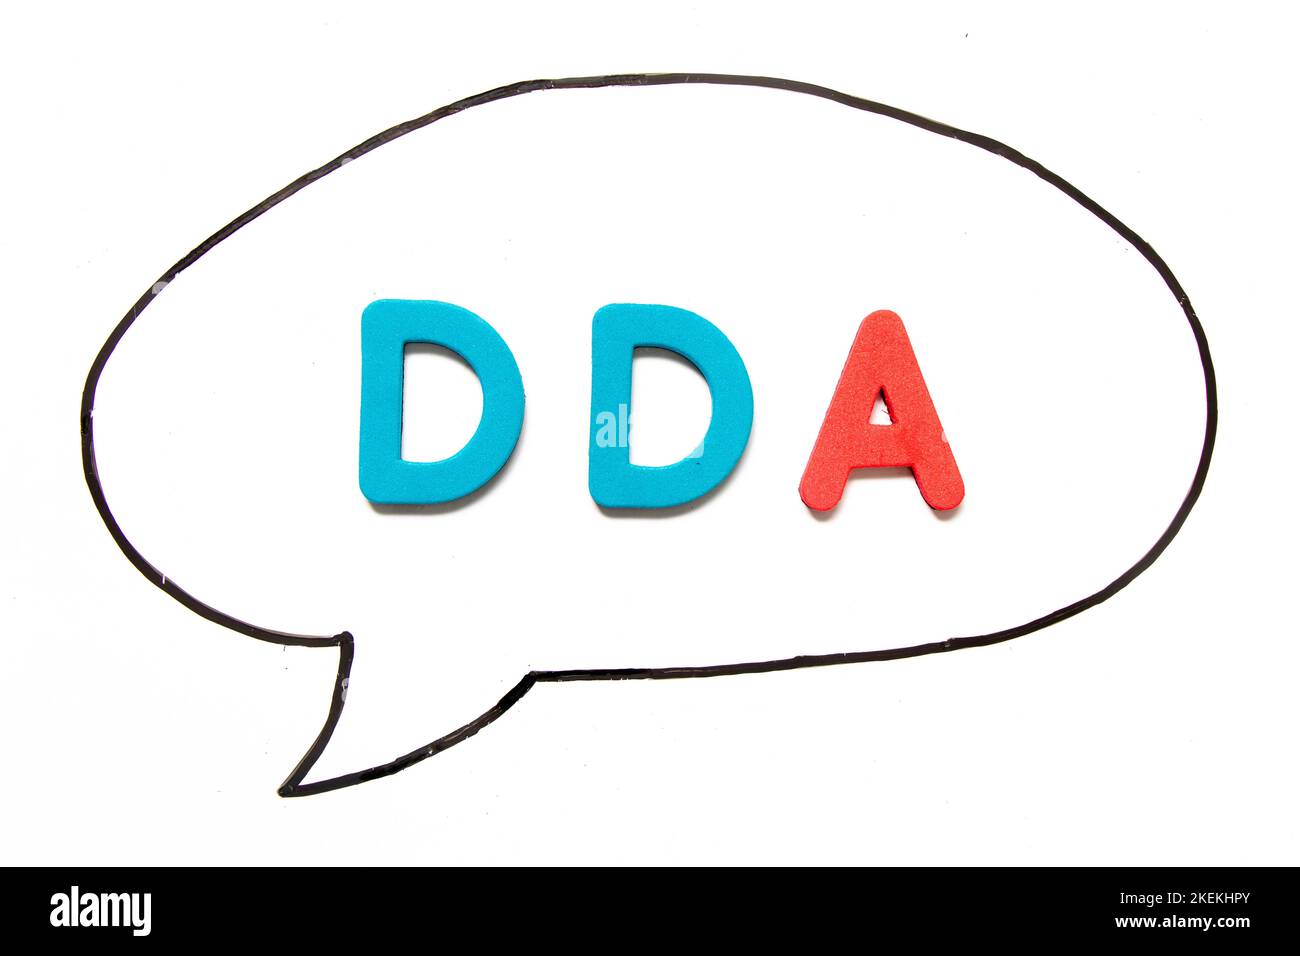 What Is a Demand Deposit Account (DDA)?